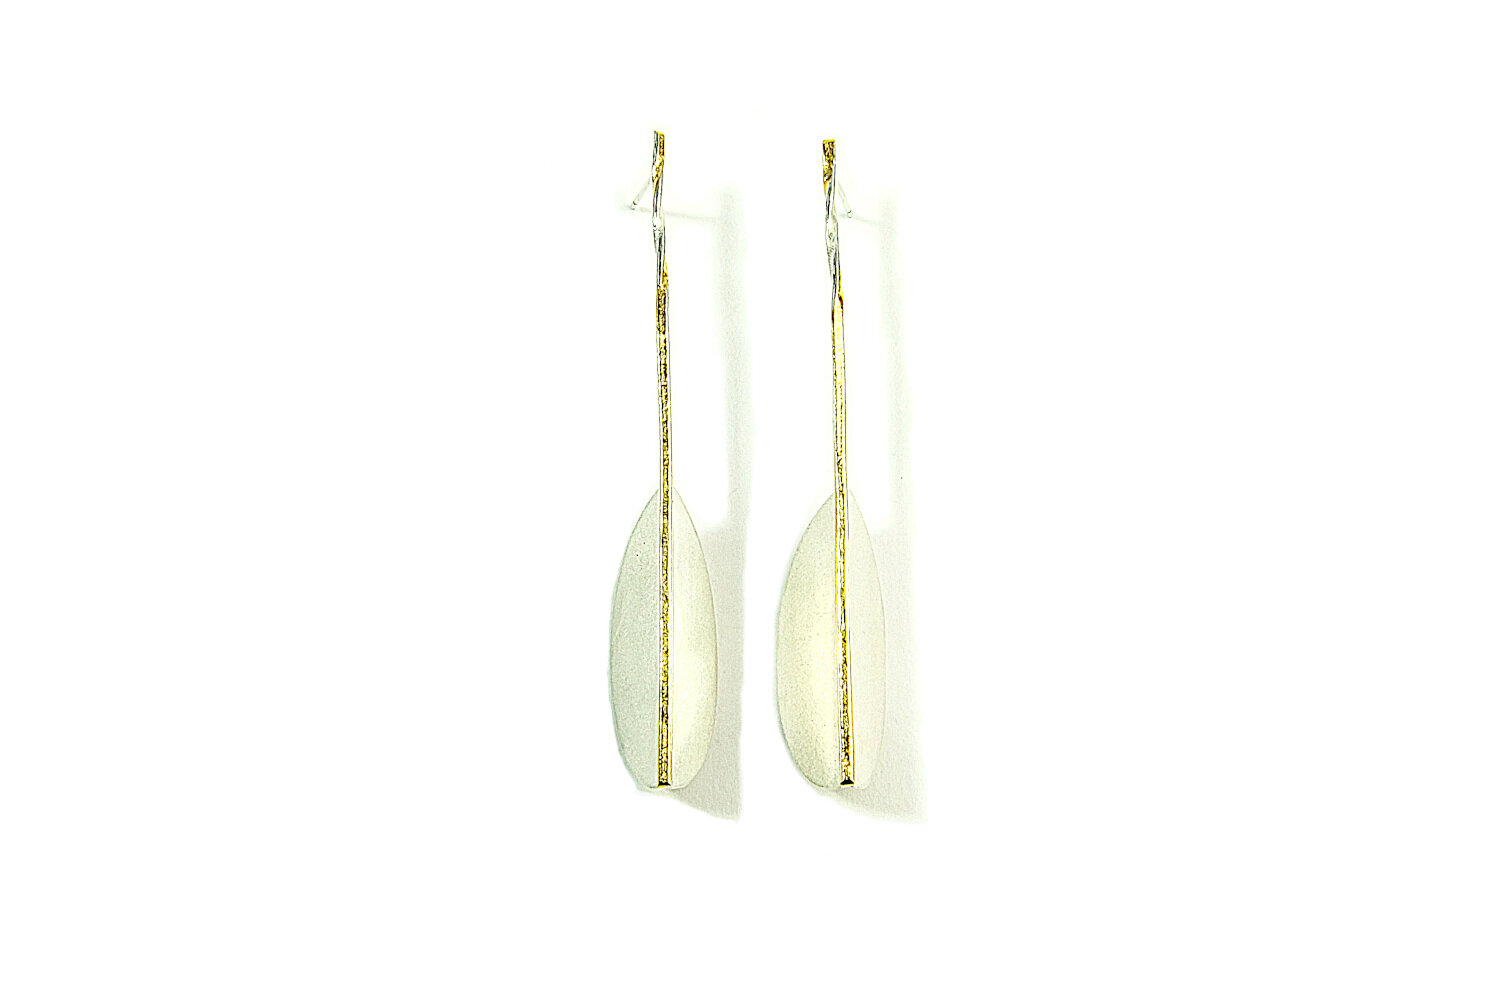 long-folded-silver-gold-earrings-hbm112a-9287.JPG